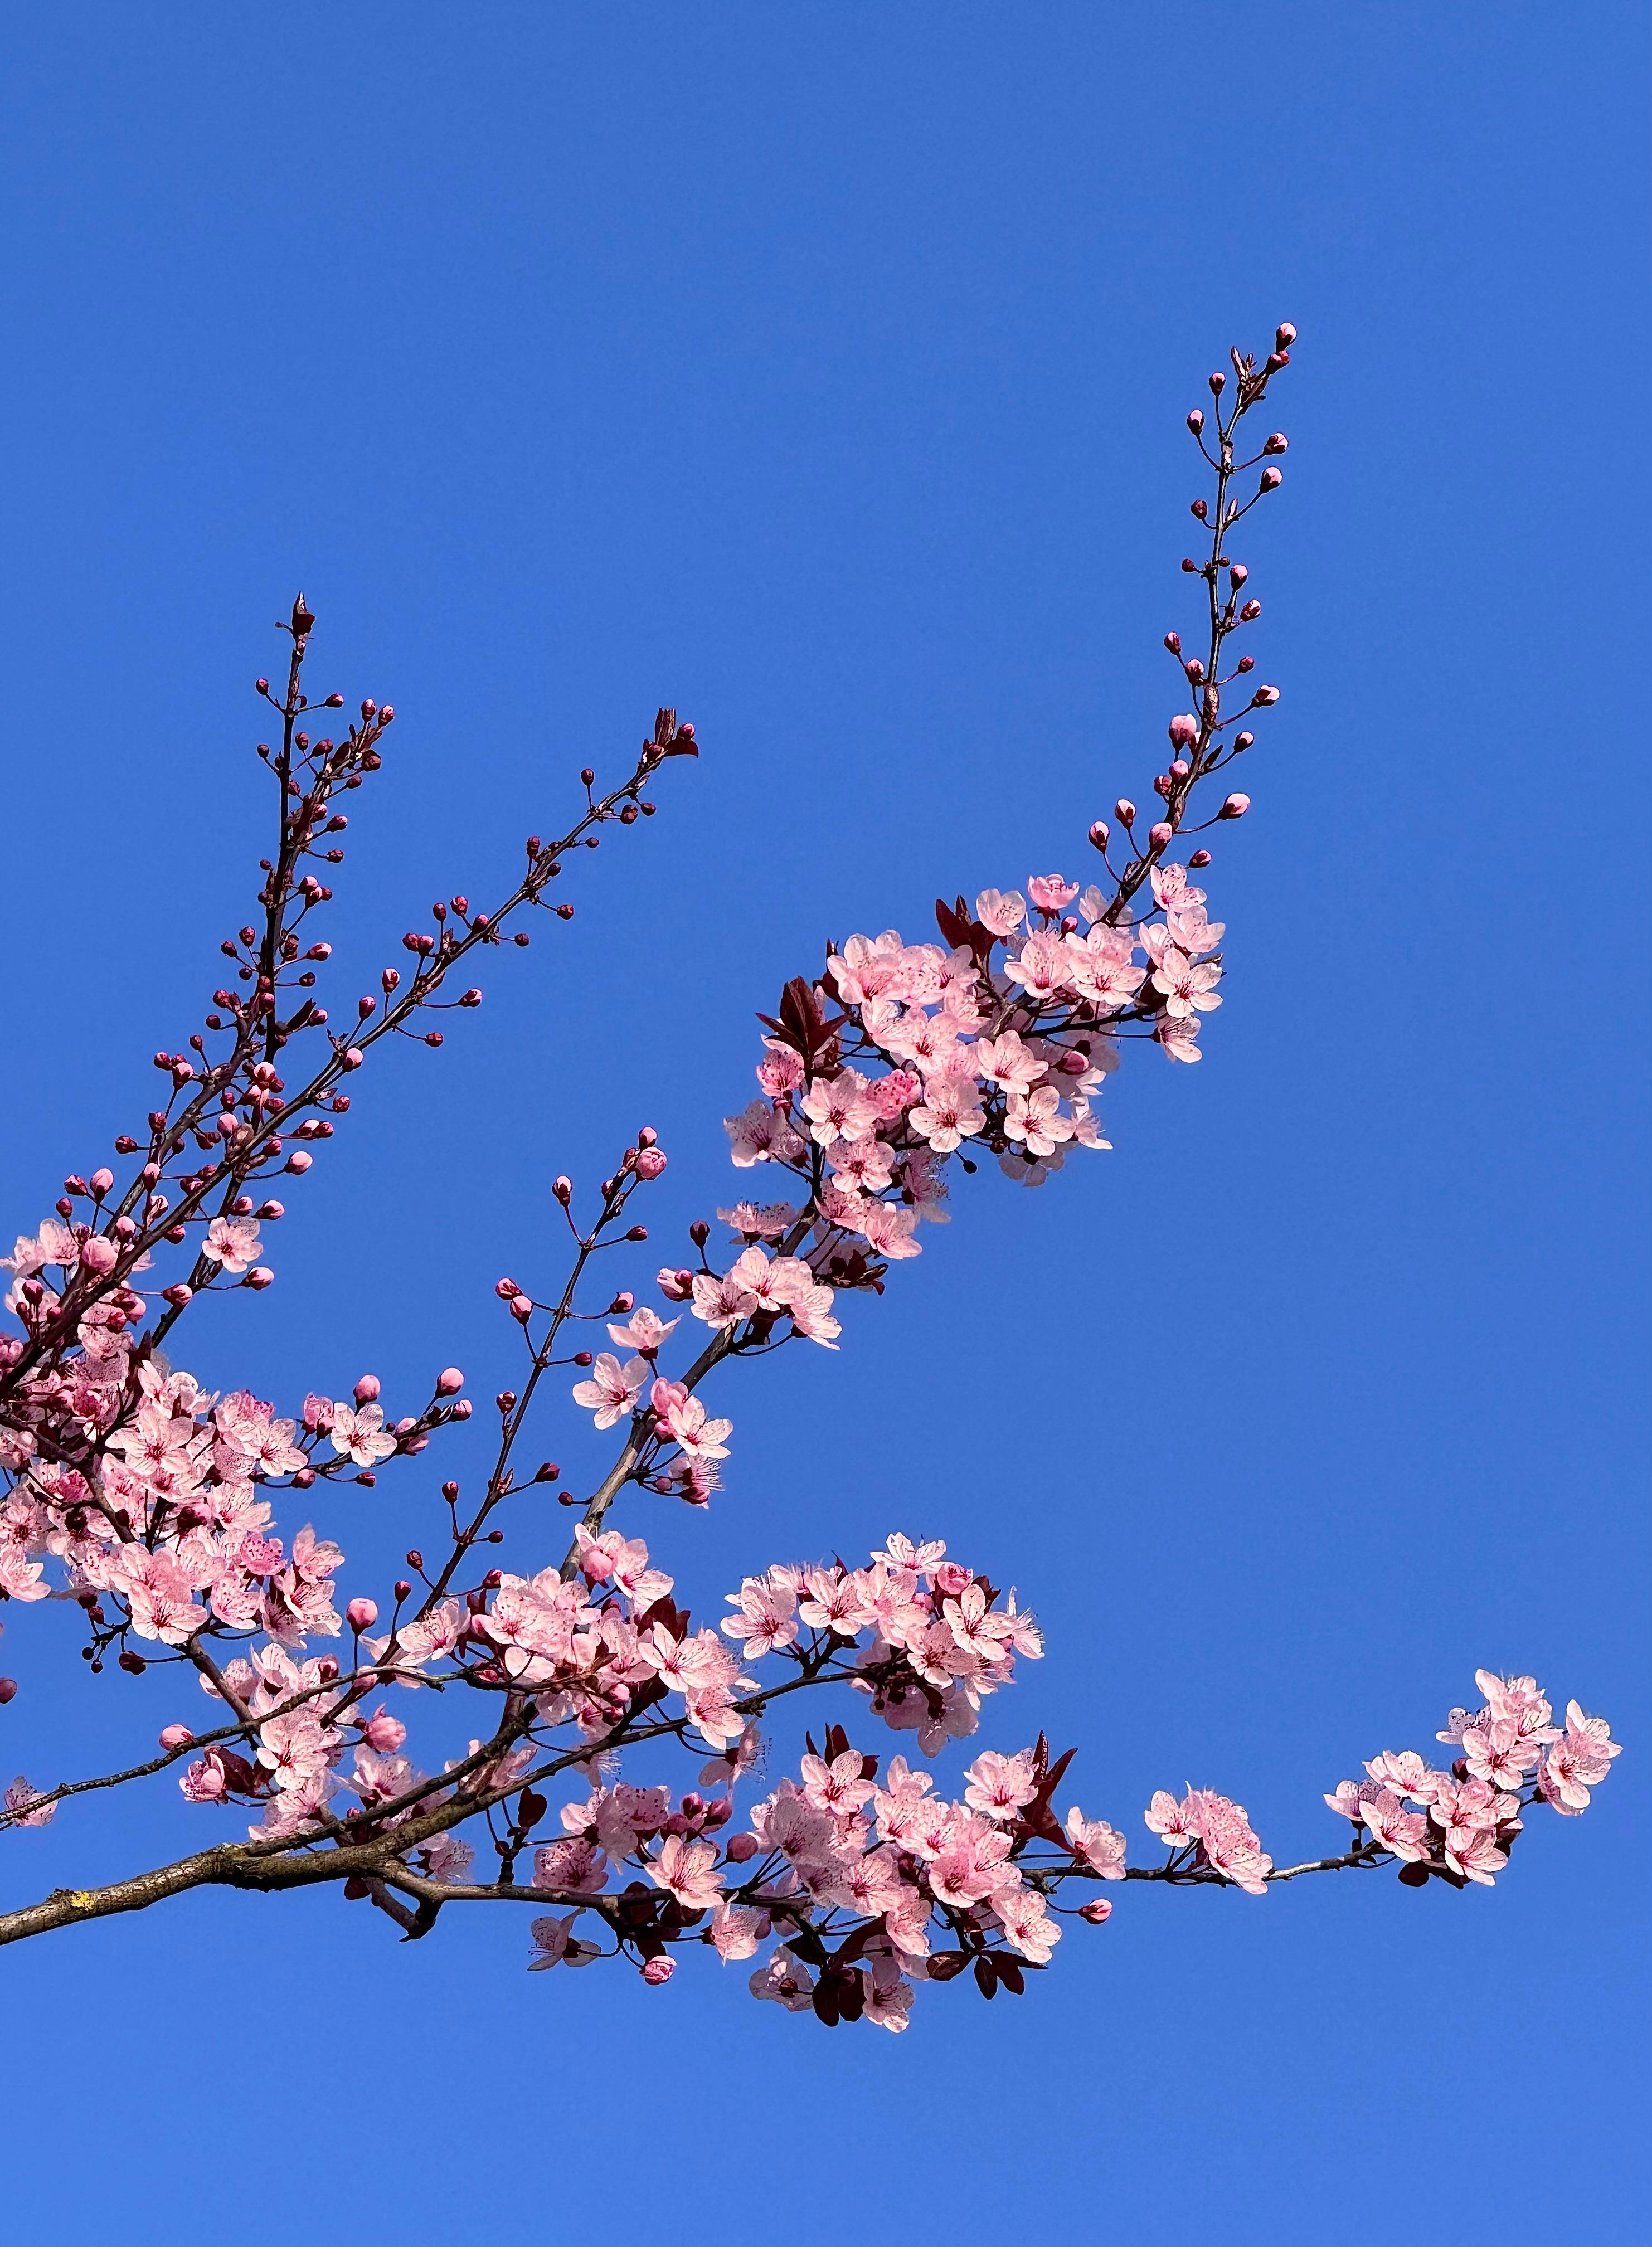 Was war das Wochenende schön 🩷 #Frühling #Natur #Outdoor #Blumenliebe #Farbenliebe #Springiscoming 